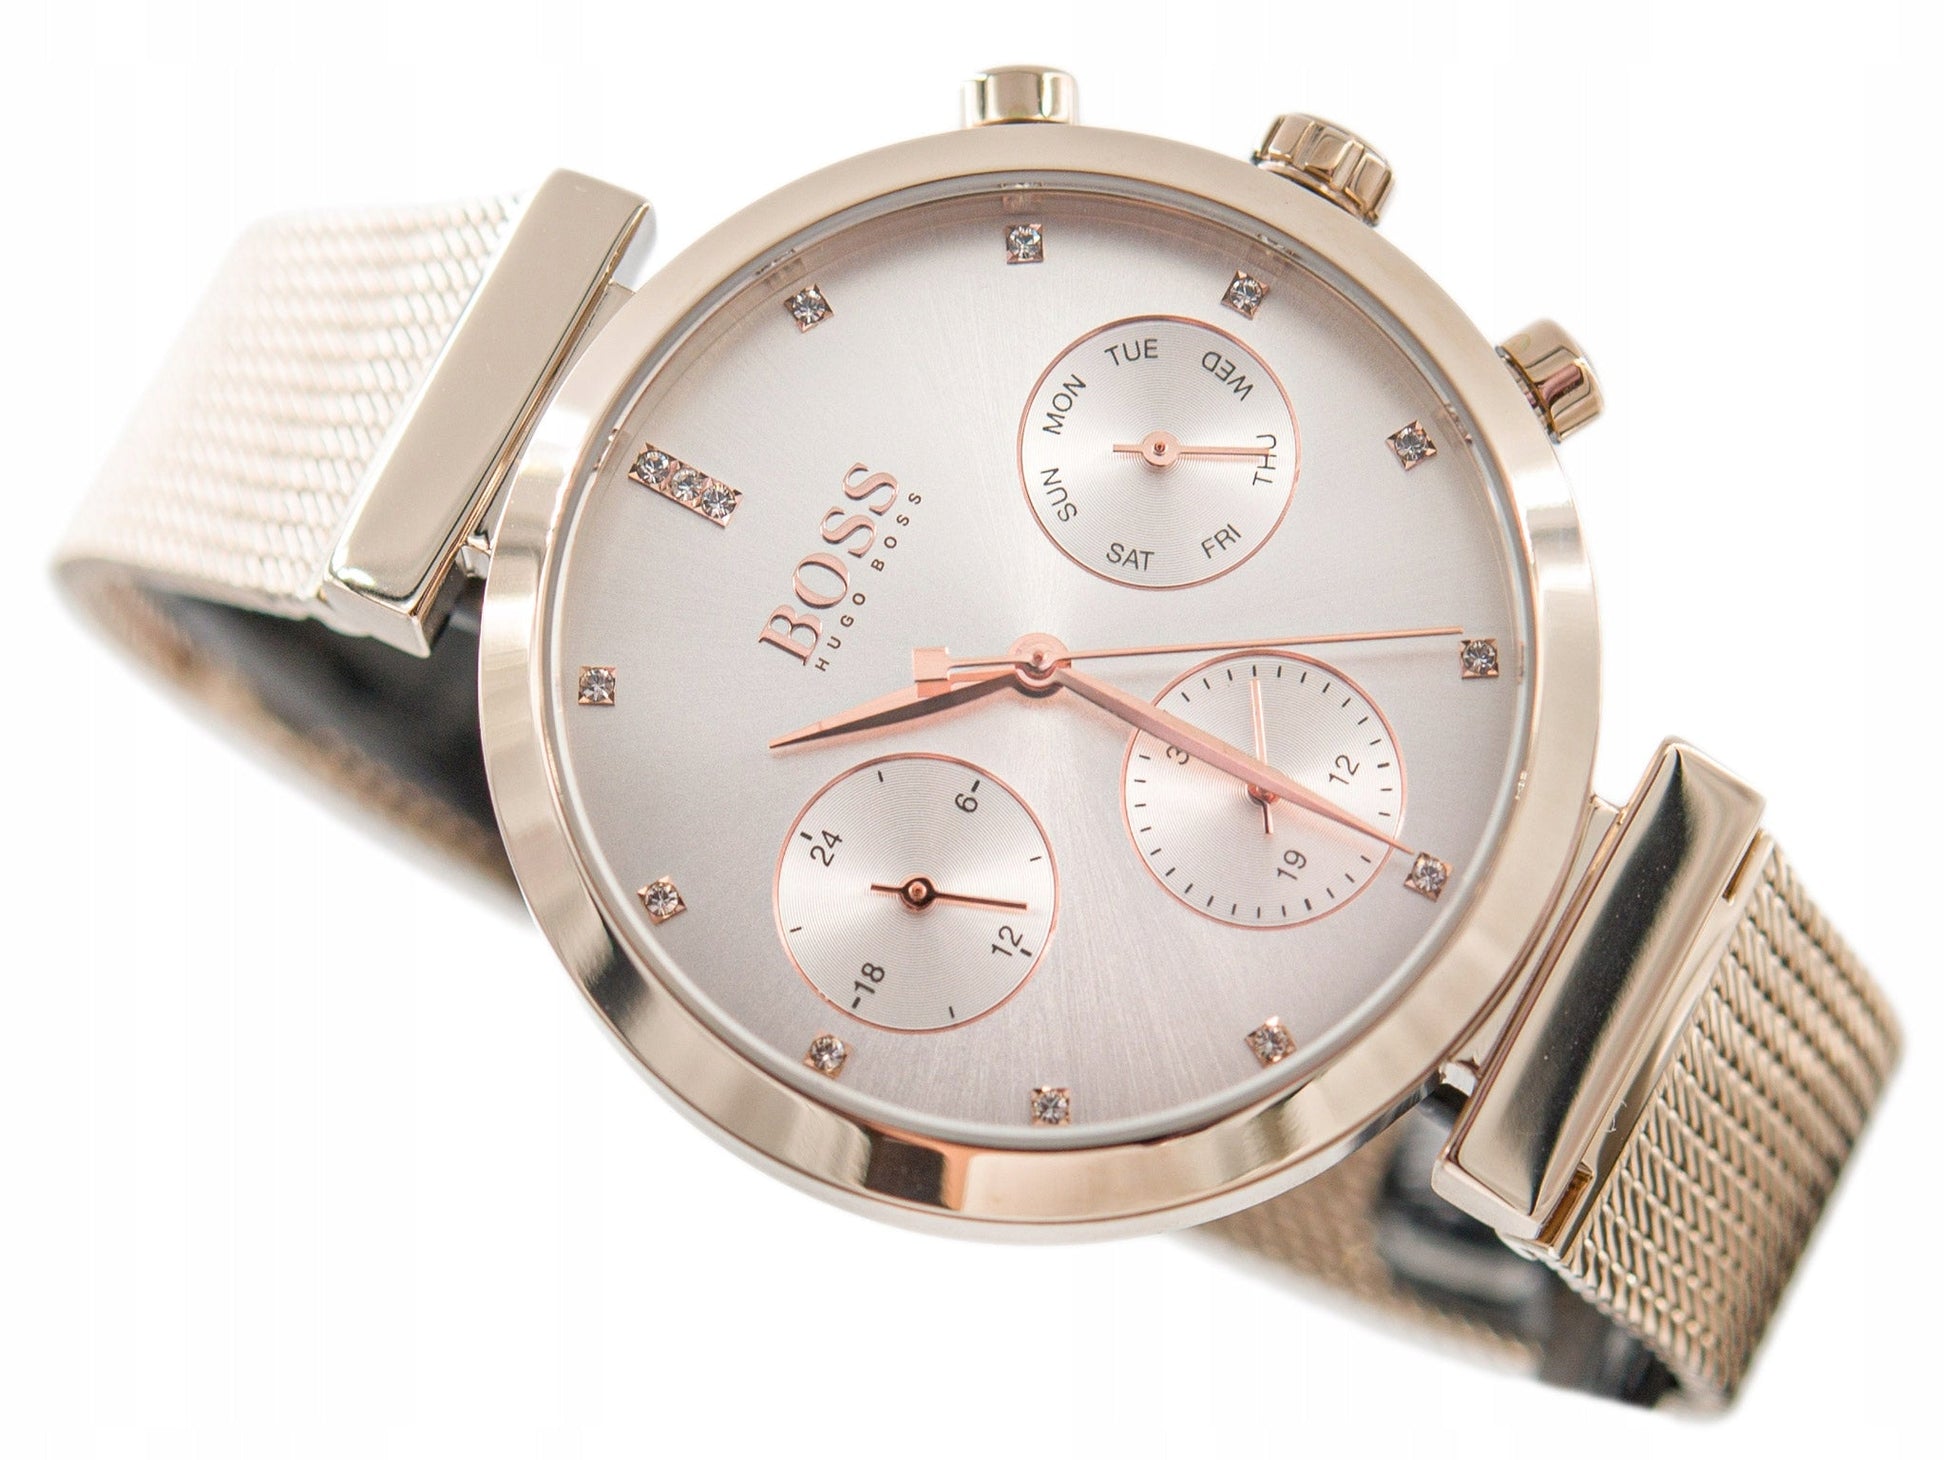 Hugo Boss Flawless White Dial Gold Mesh Bracelet Watch for Women - 1502553